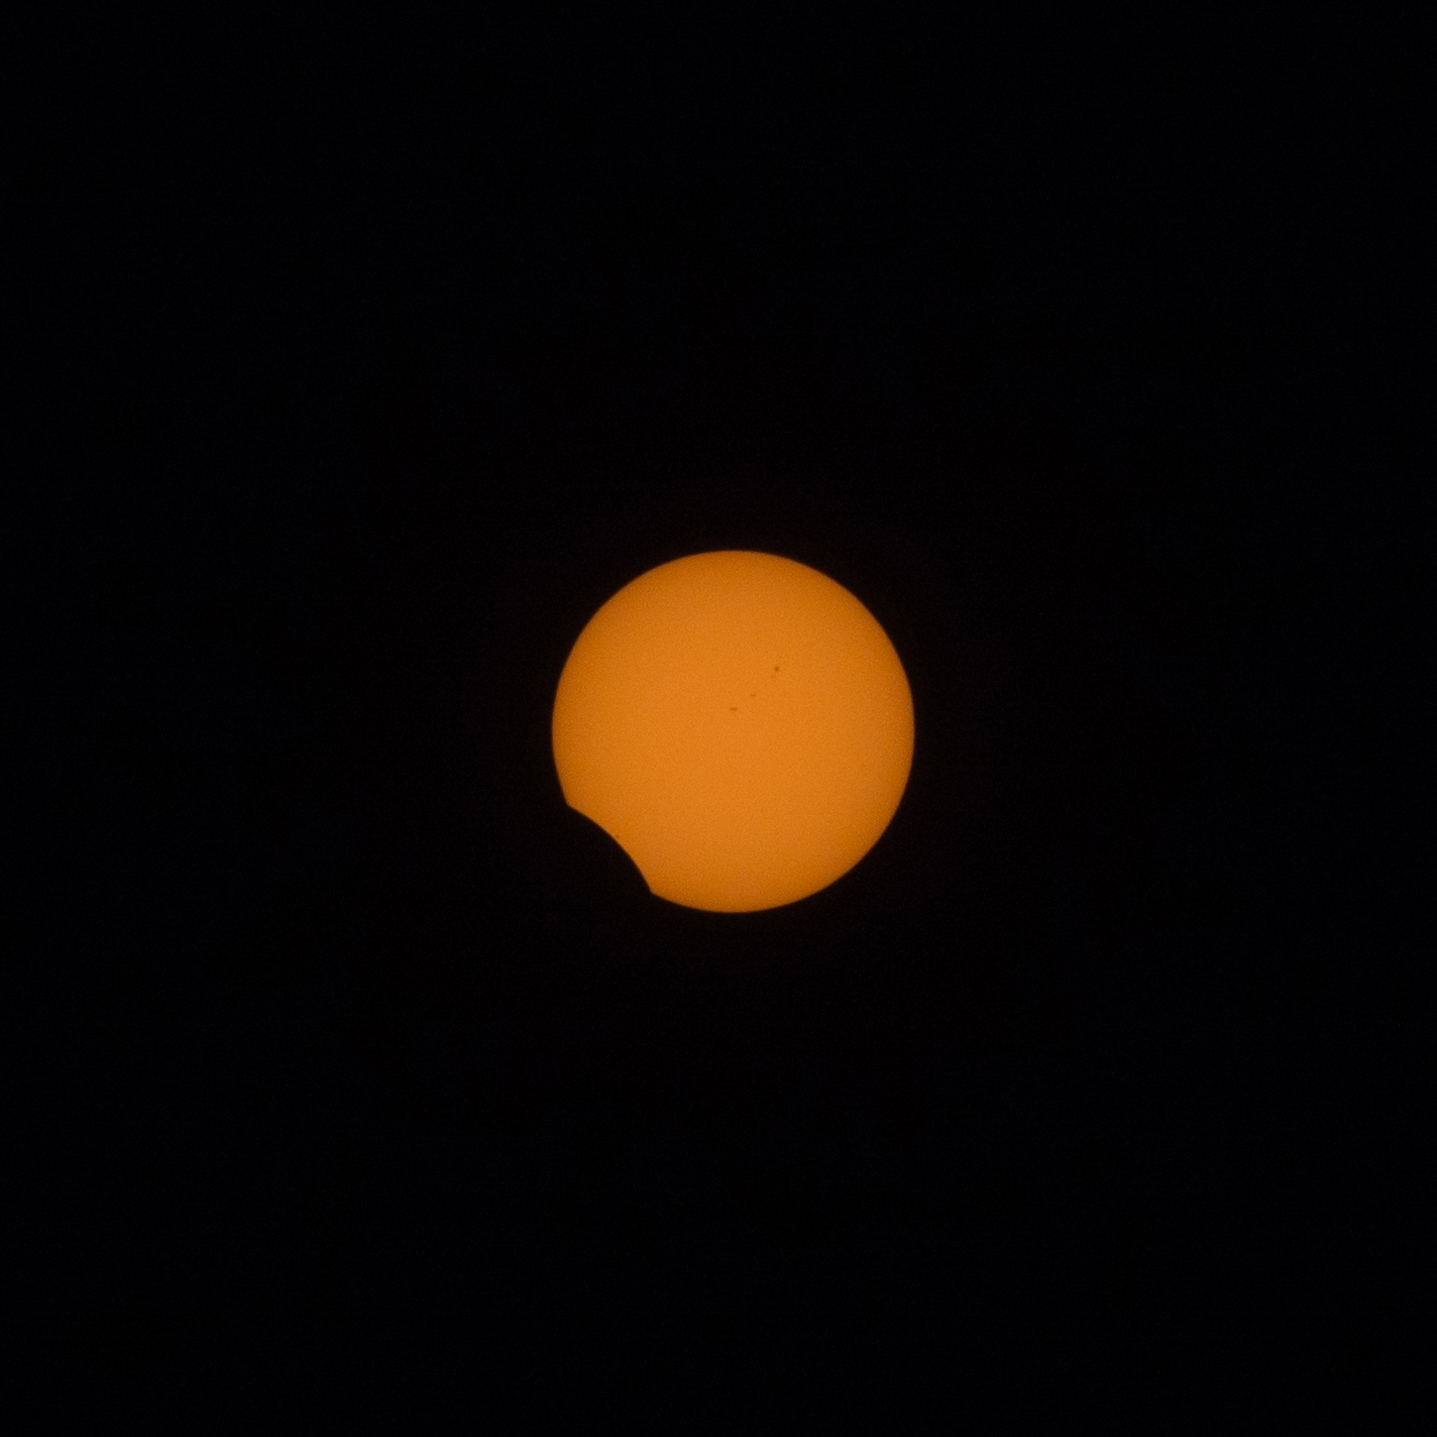 Eclipse de soleil du 21 août 2017